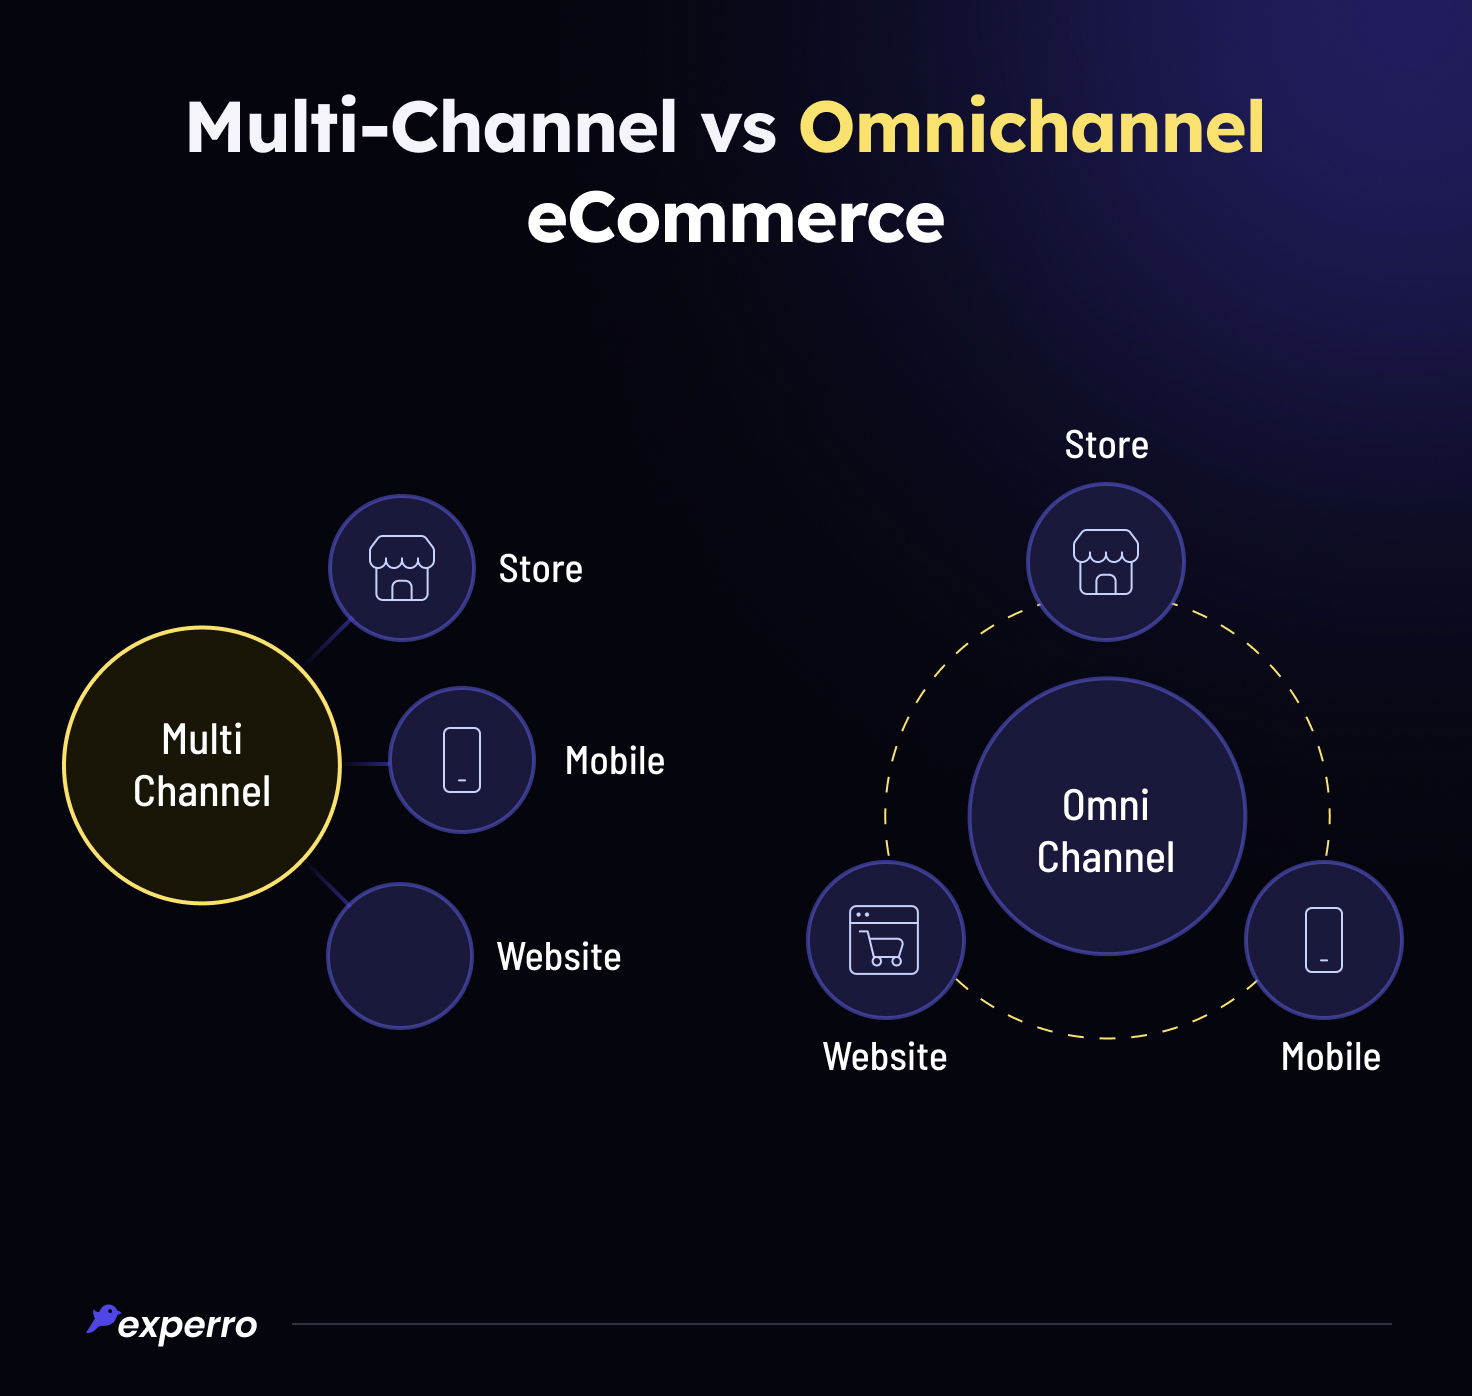 Multi-channel vs Omnichannel eCommerce